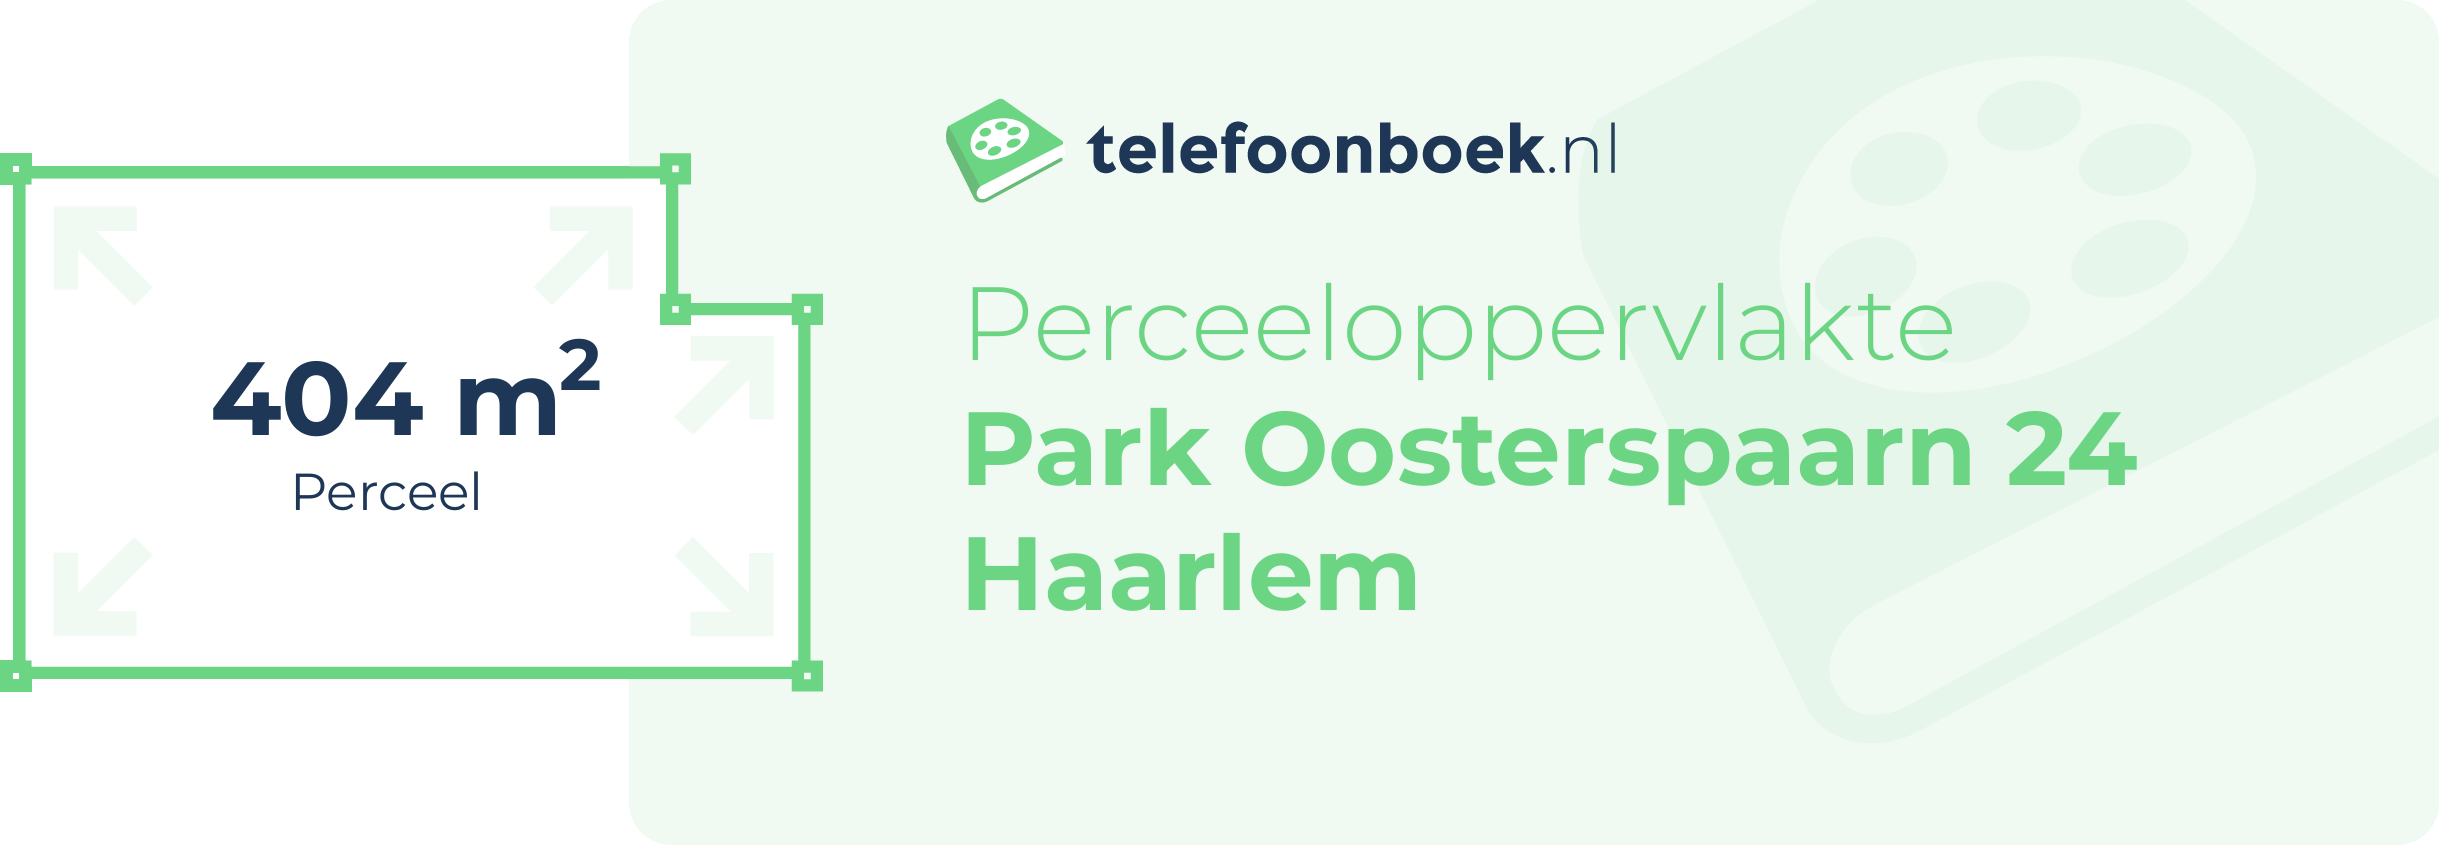 Perceeloppervlakte Park Oosterspaarn 24 Haarlem